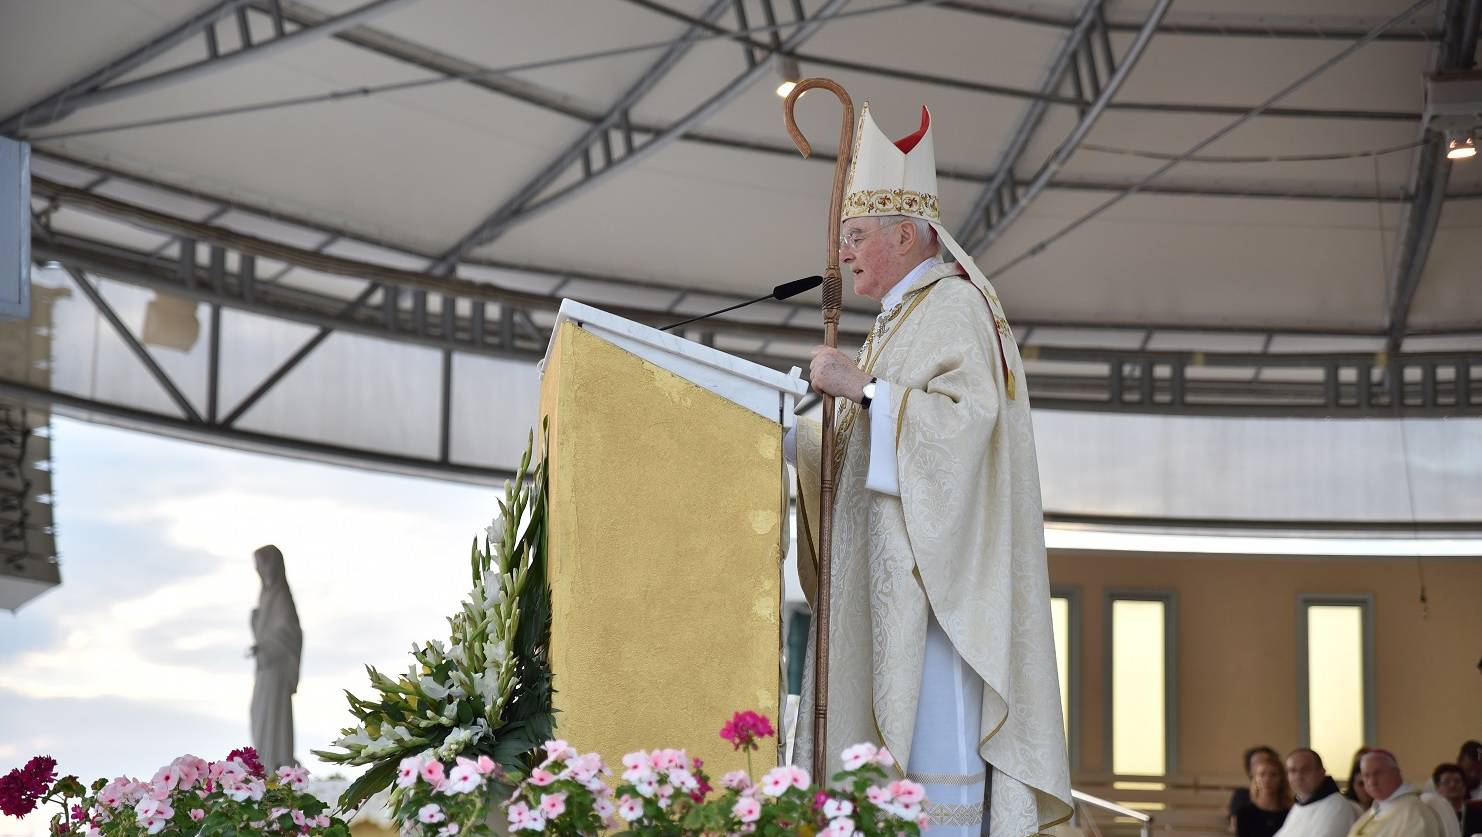 Dolaze milijuni ljudi: Međugorje će Papa proglasiti svetištem?